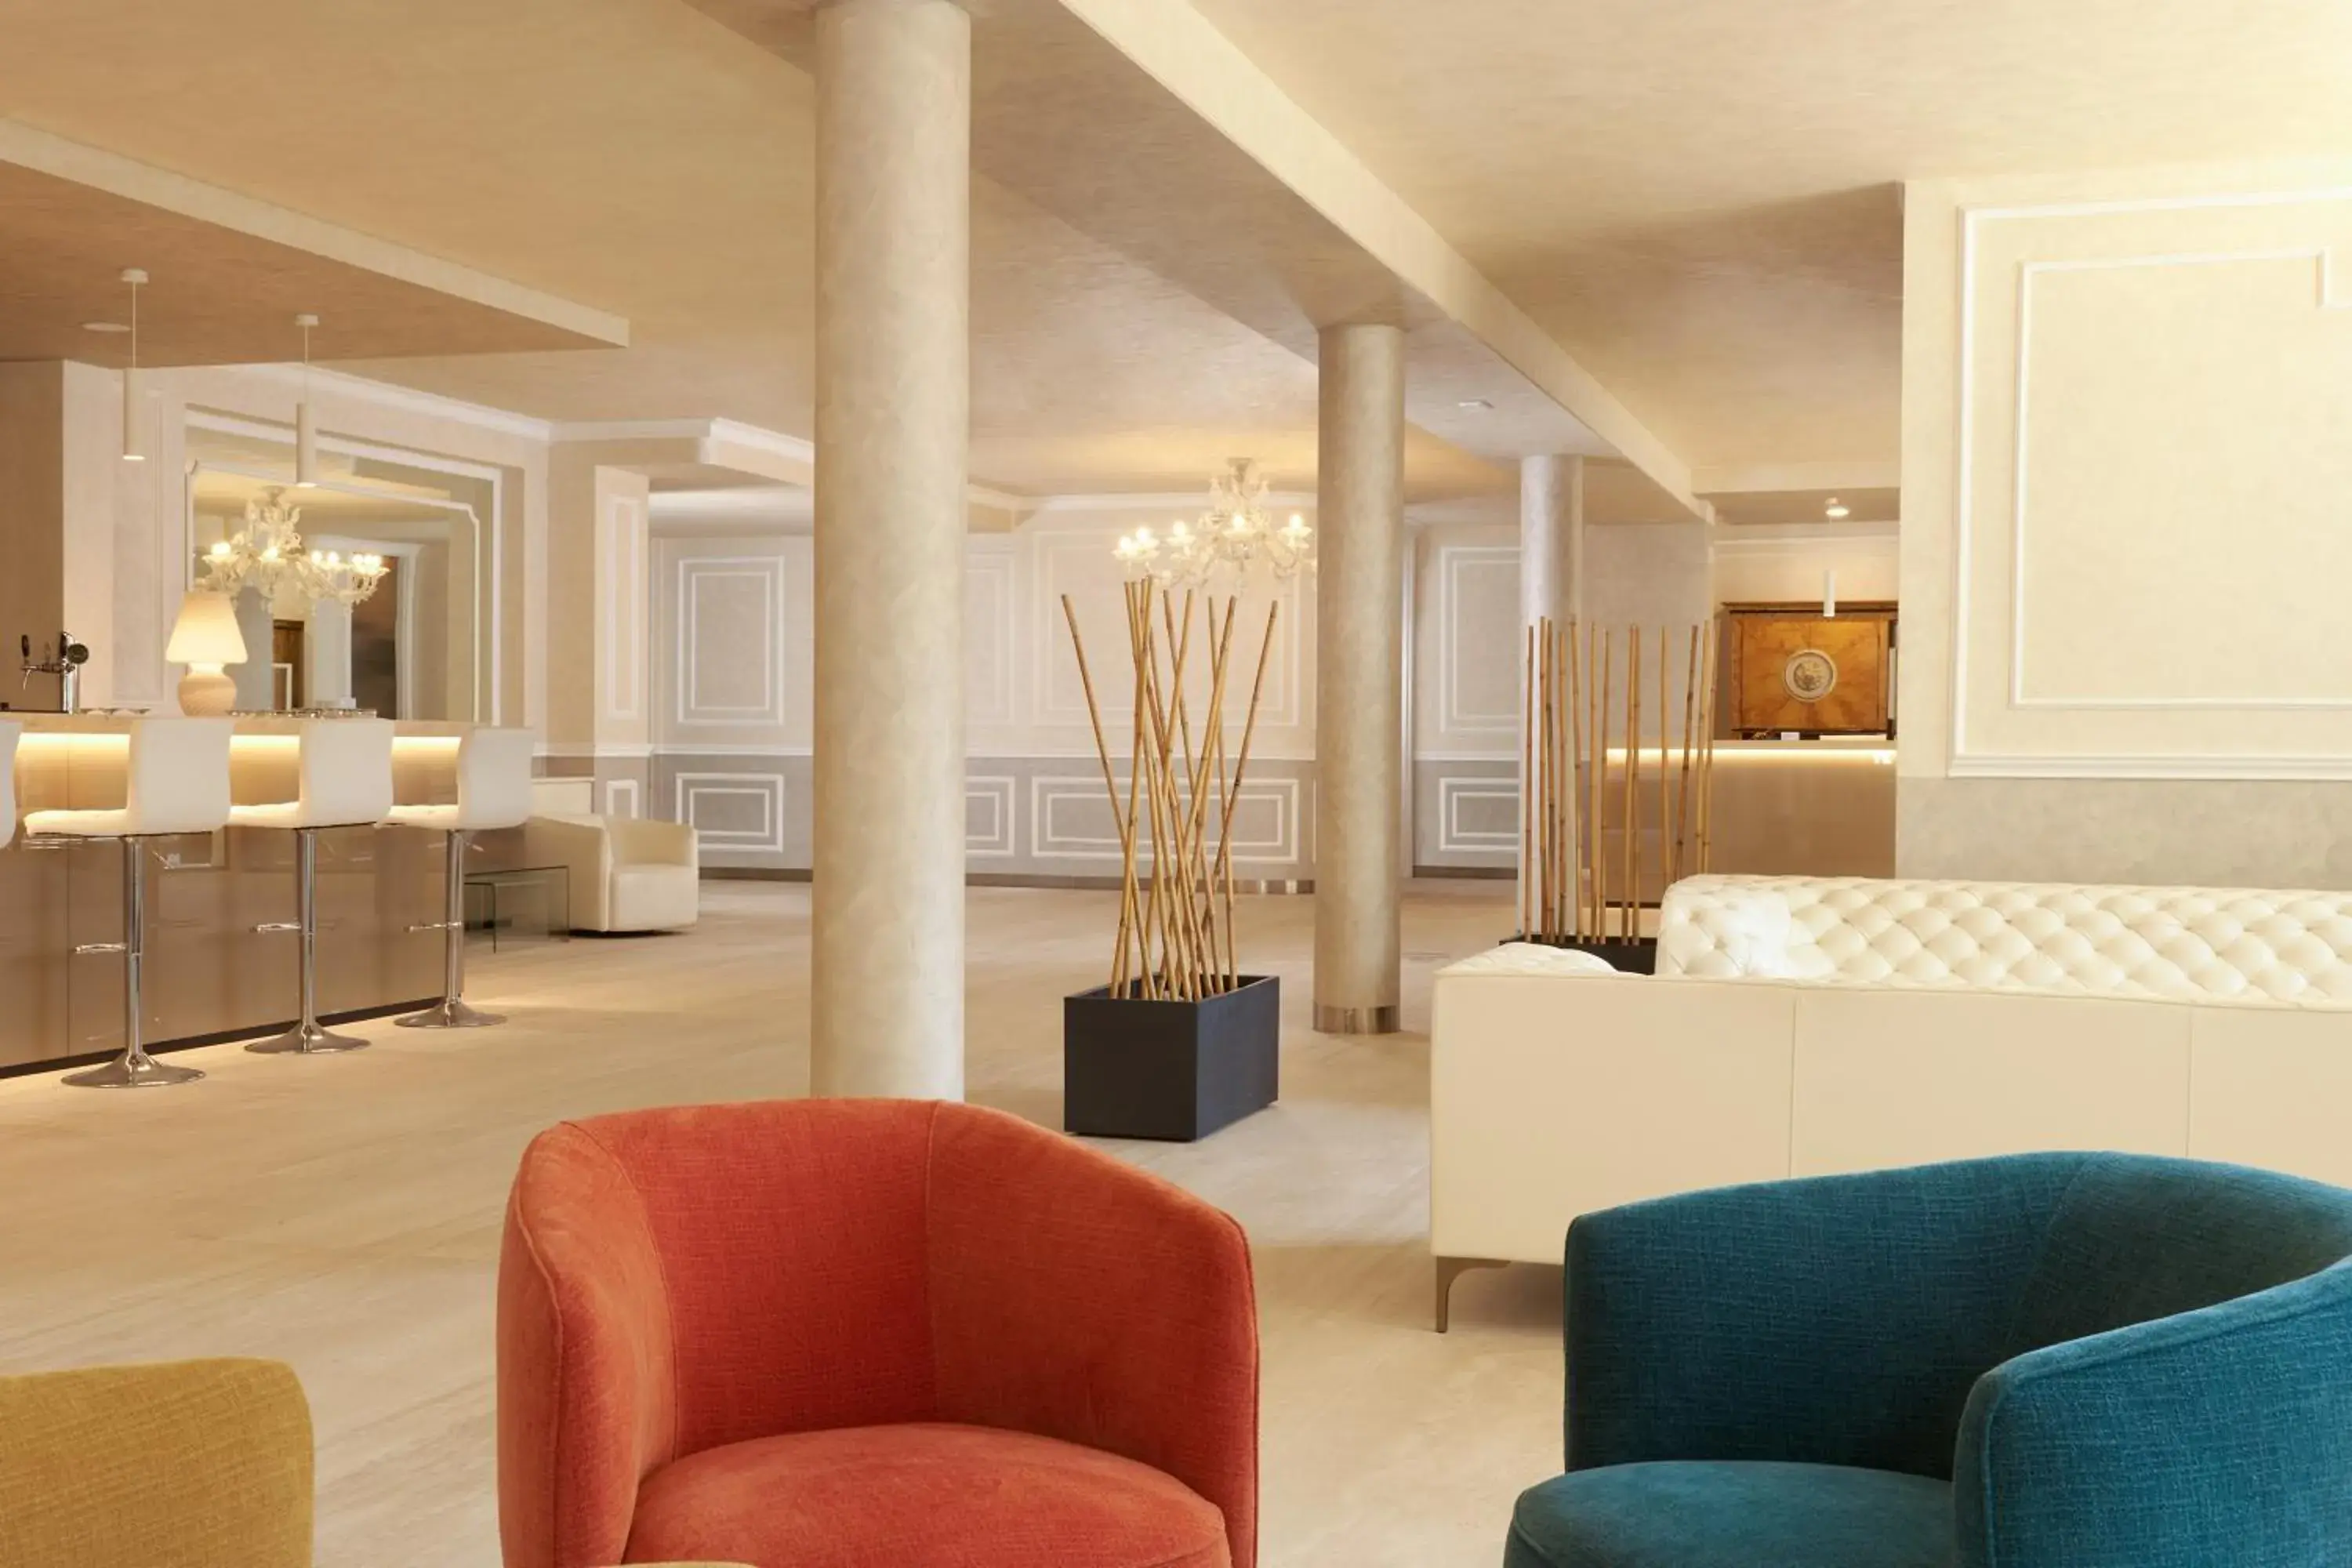 Lobby or reception, Lobby/Reception in Hotel Gallia & Resort